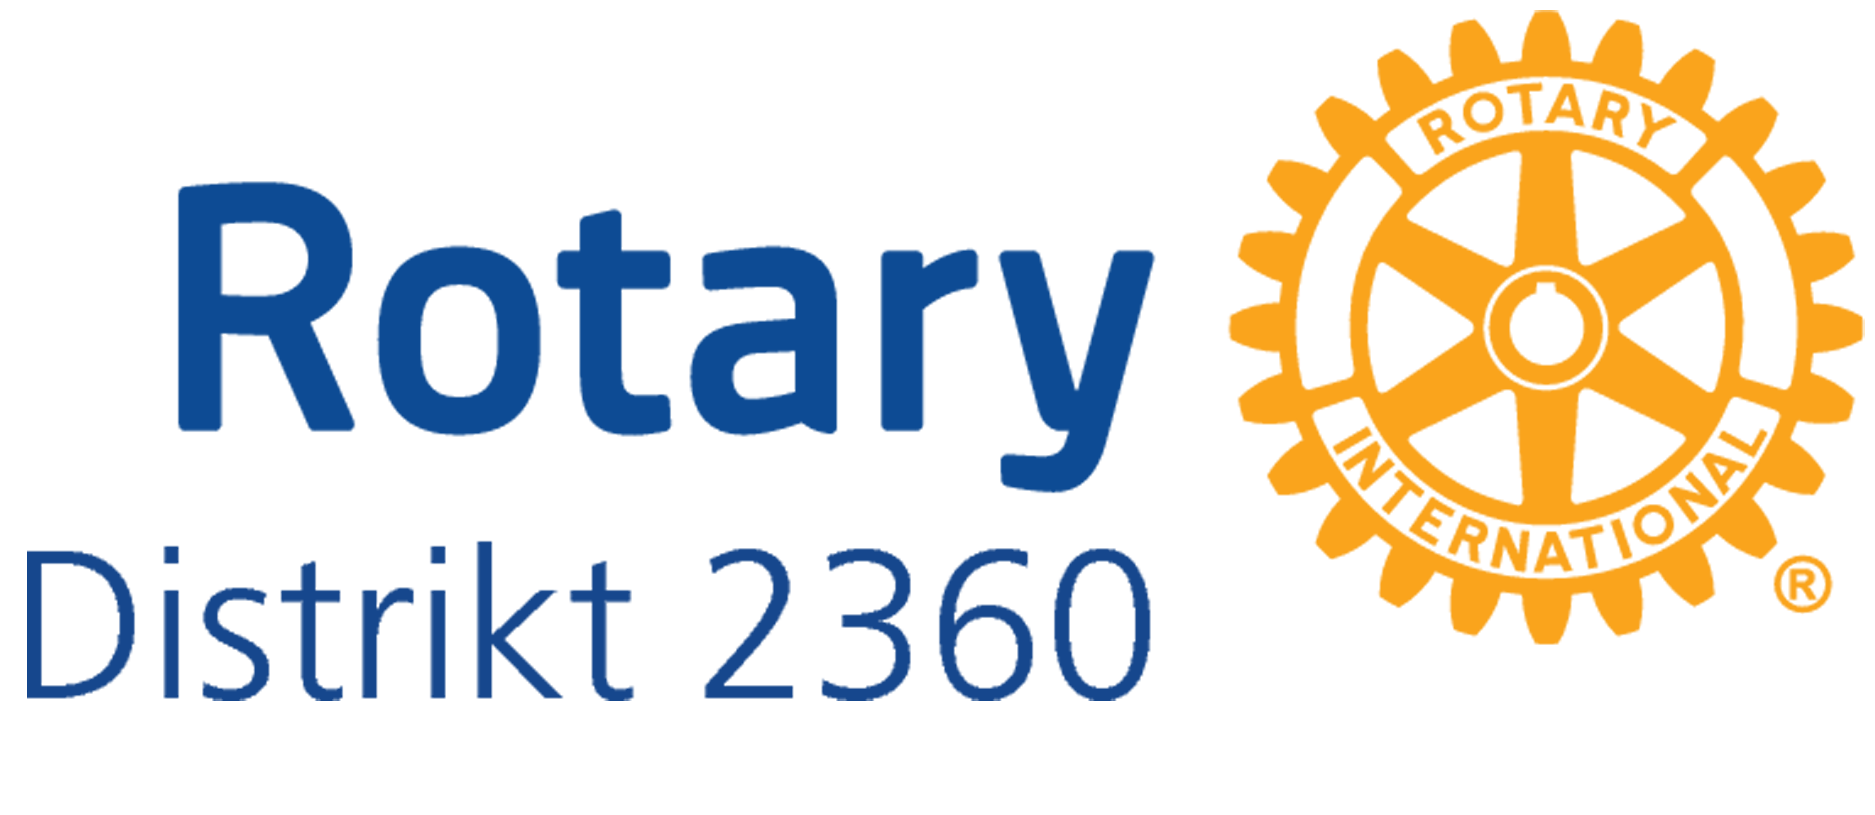 District 2360 logo